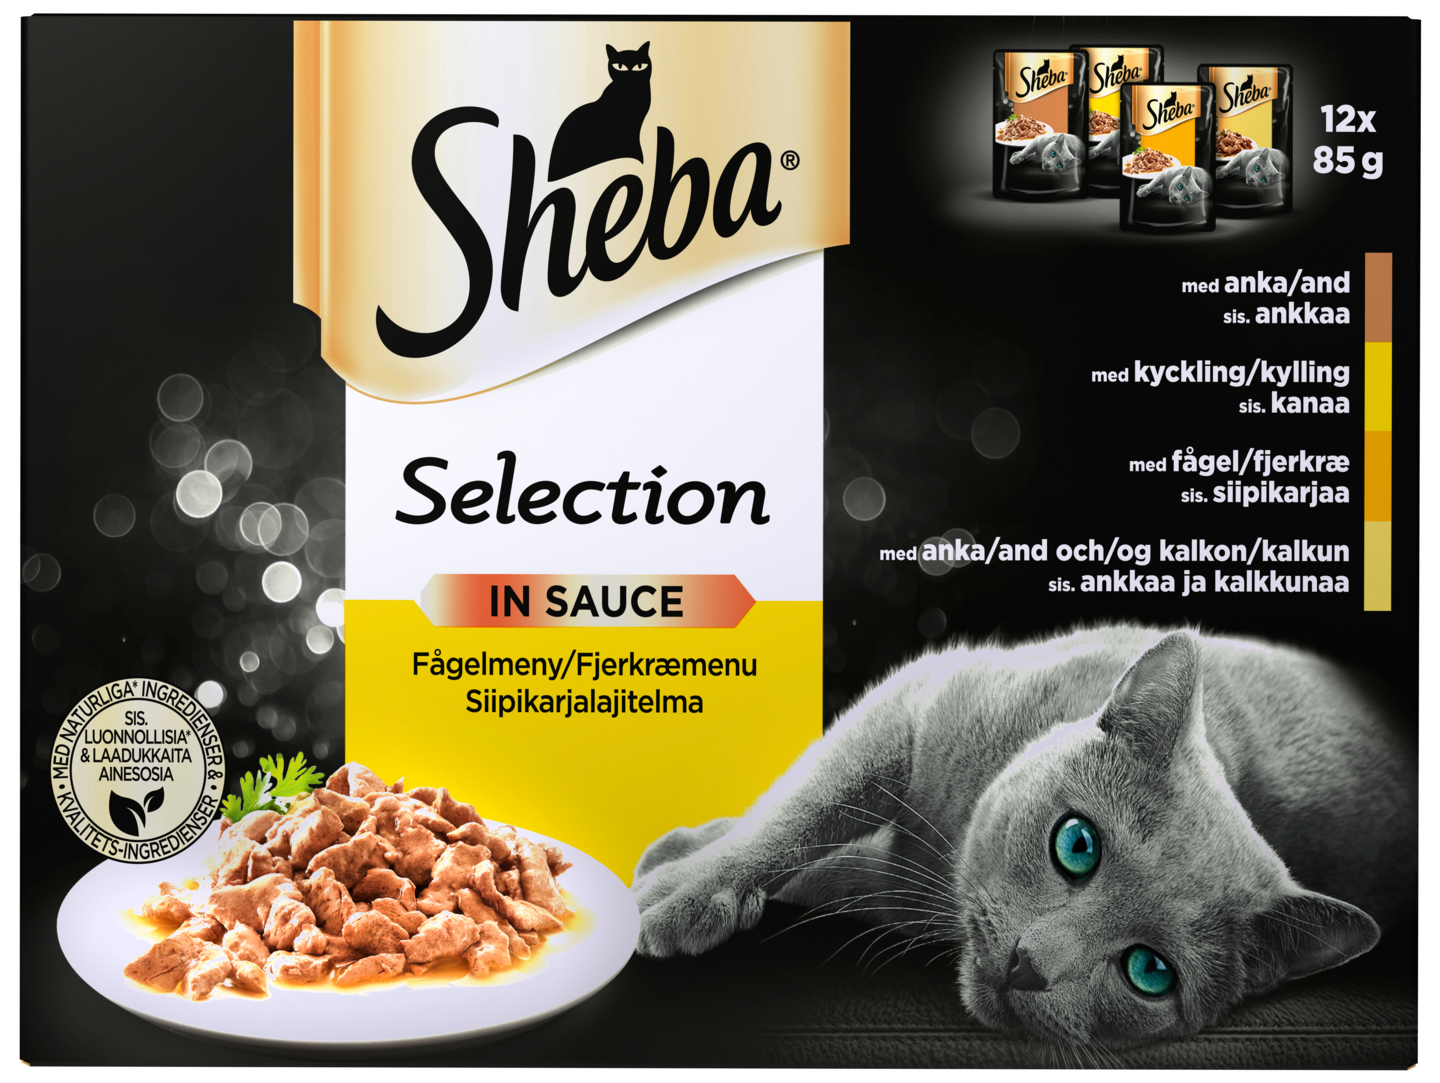 Sheba Select Slices Siipikarjalajitelma 12x85g